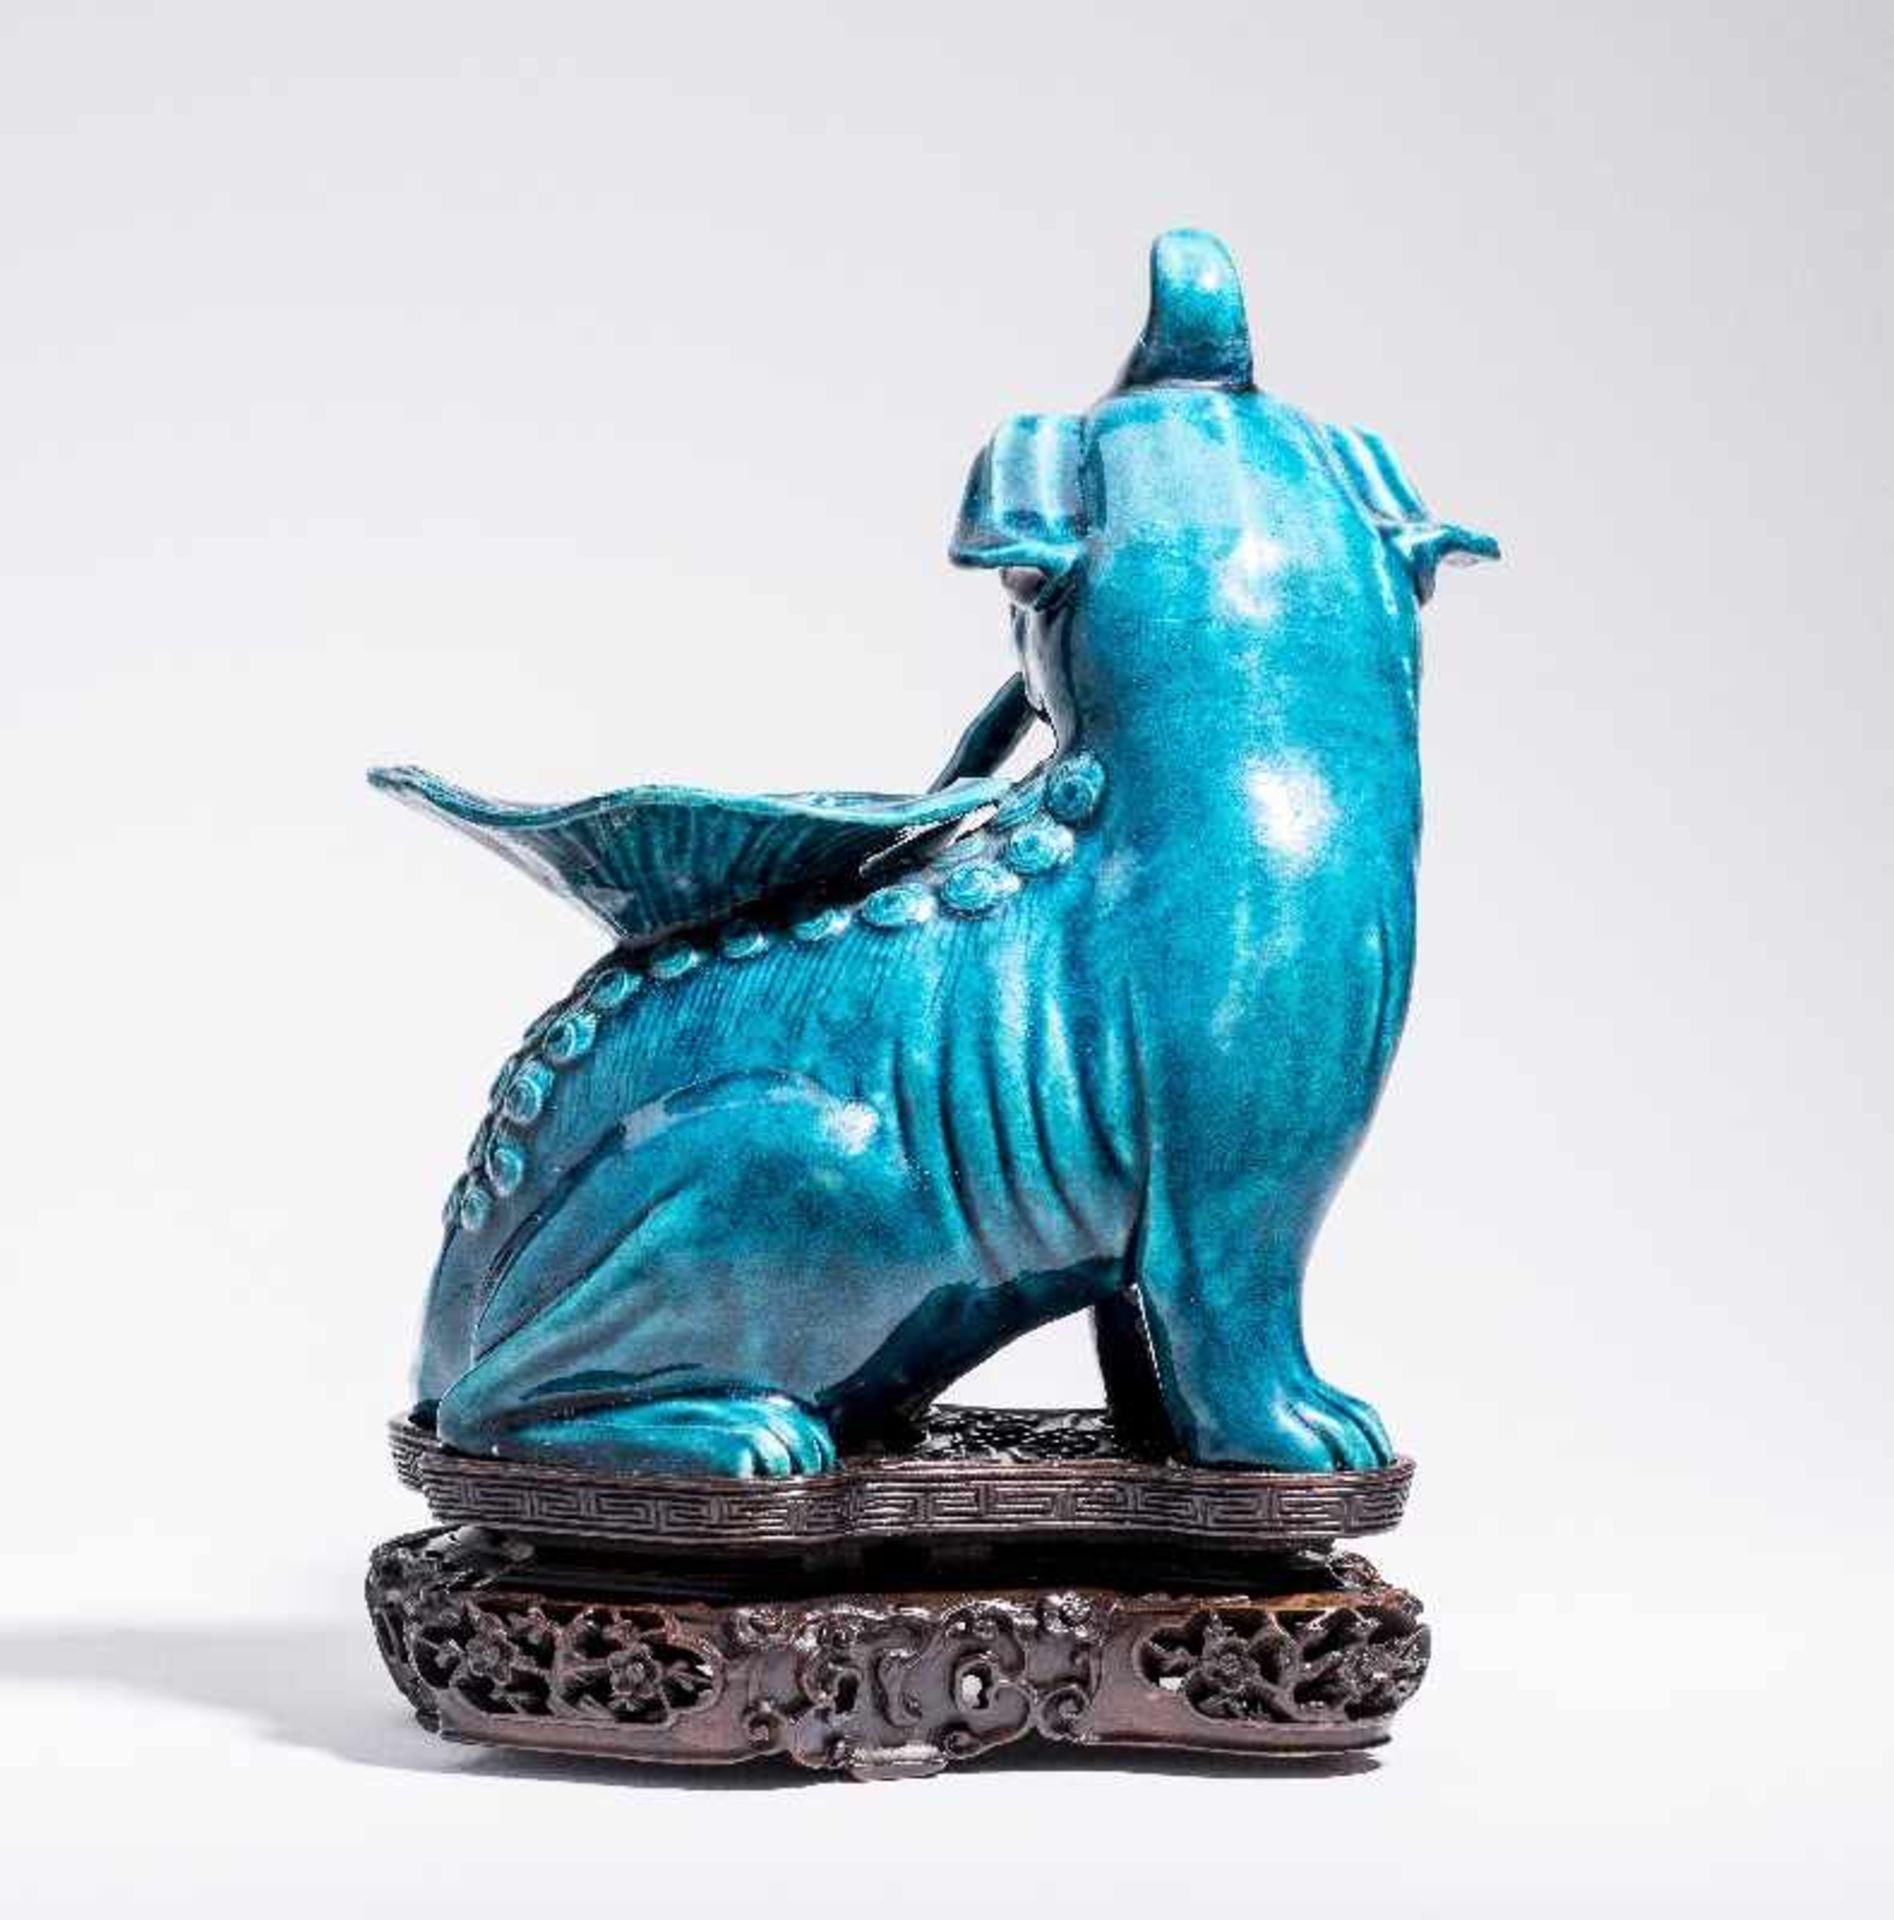 SITZENDES EINHORNPorzellan. China, Qing-Dynastie, 18. Jh. An dieser Porzellanskulptur des - Bild 4 aus 7